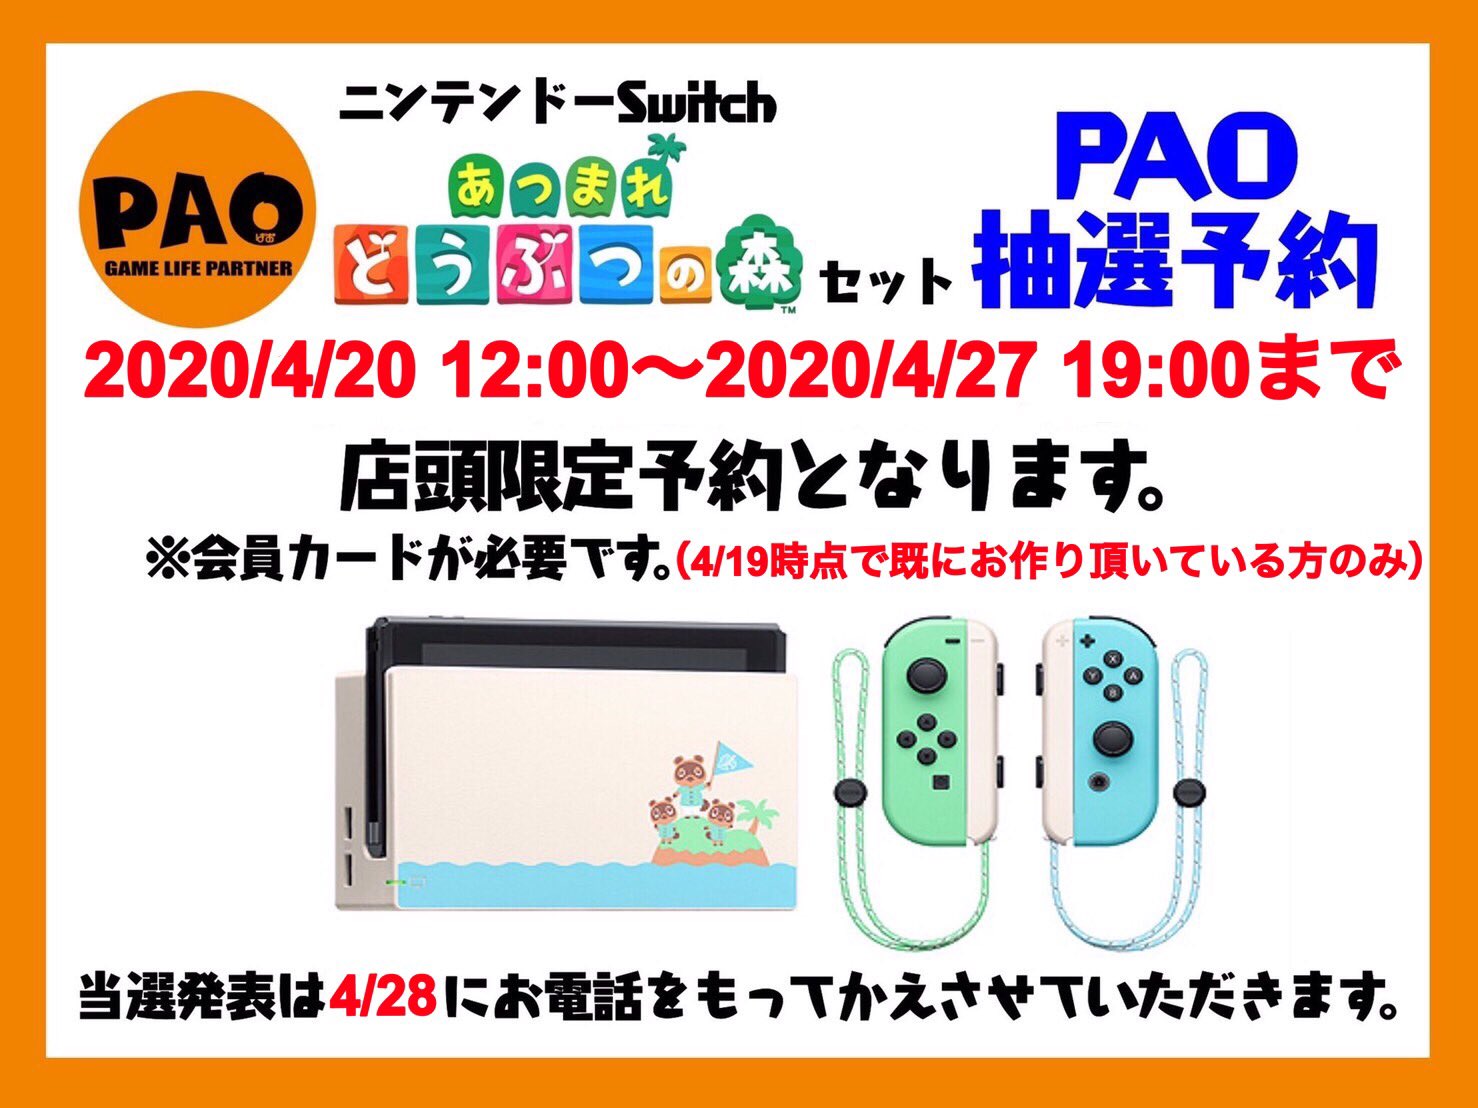 PAO立川店、4月下旬入荷の「Nintendo Switch あつまれどうぶつの森セット」抽選予約を会員限定で開始 - GAME Watch